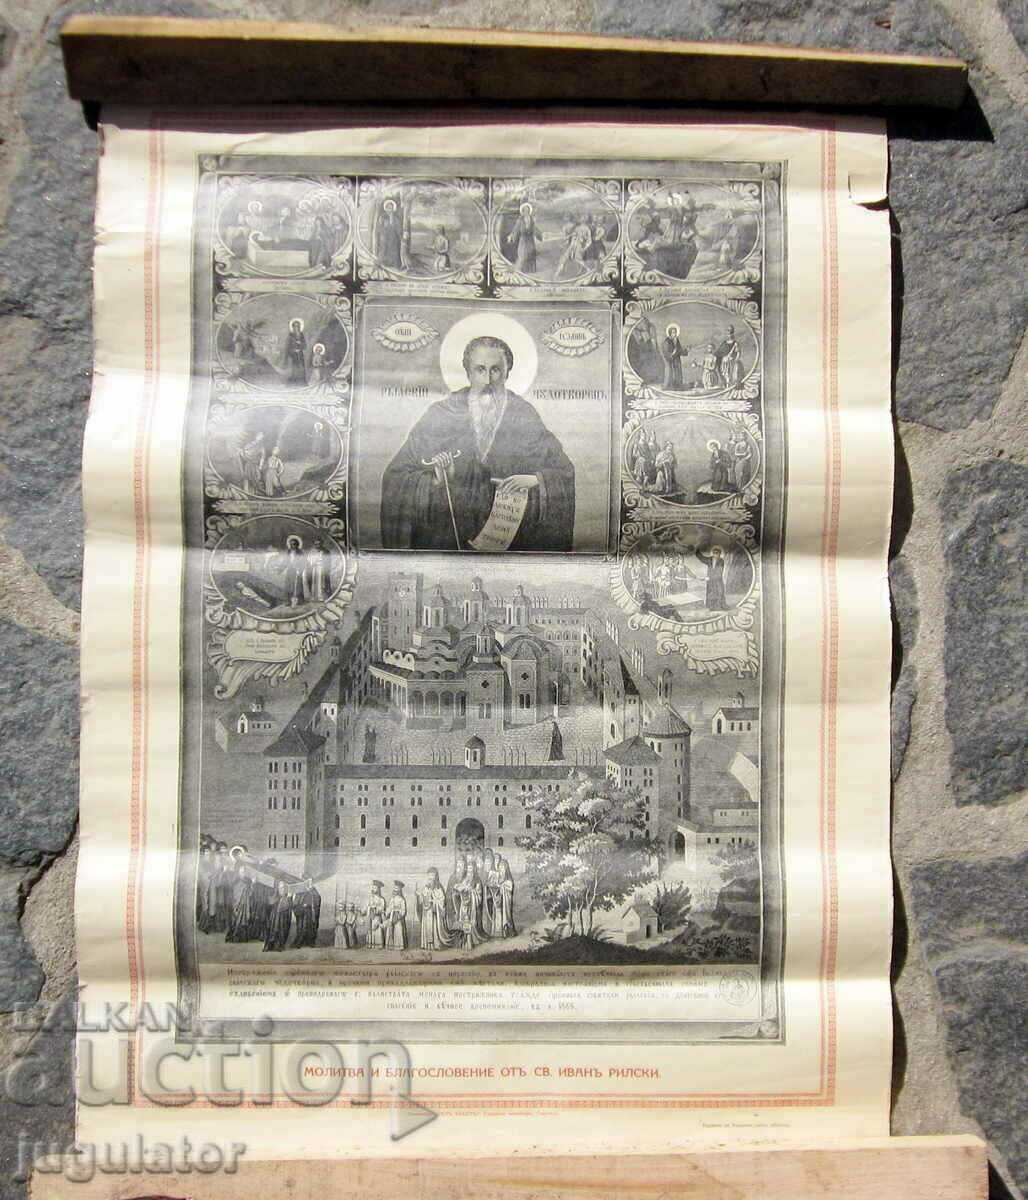 Λιθογραφία του Βασιλείου της Βουλγαρίας του Αγίου Ιβάν του Θαυματουργού της Ρίλας